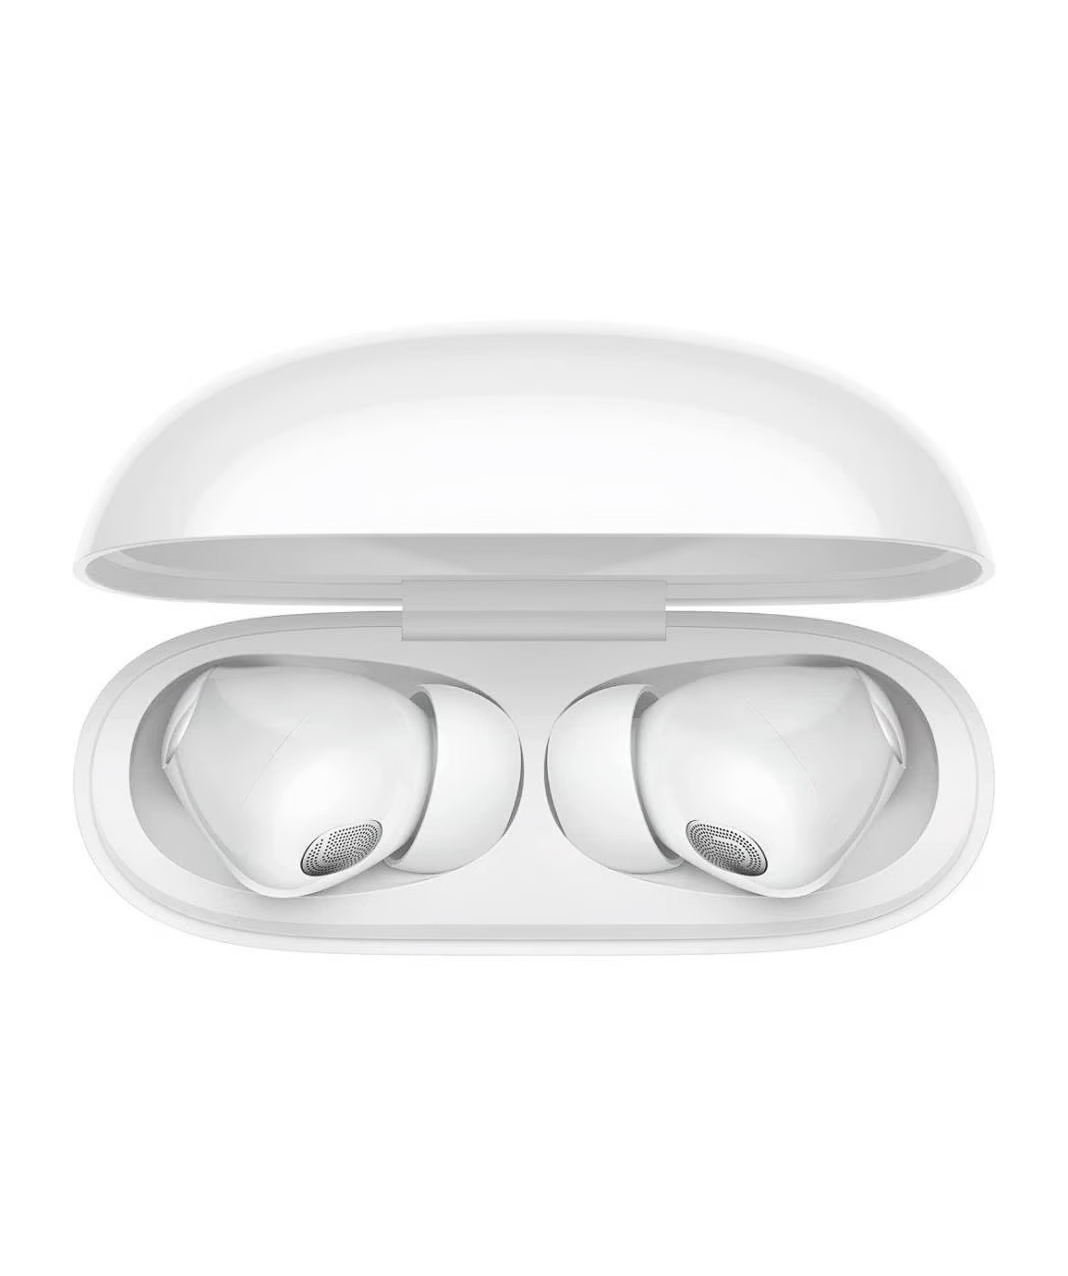 Անլար ականջակալներ «Xiaomi Redmi» 3T Pro, սպիտակ